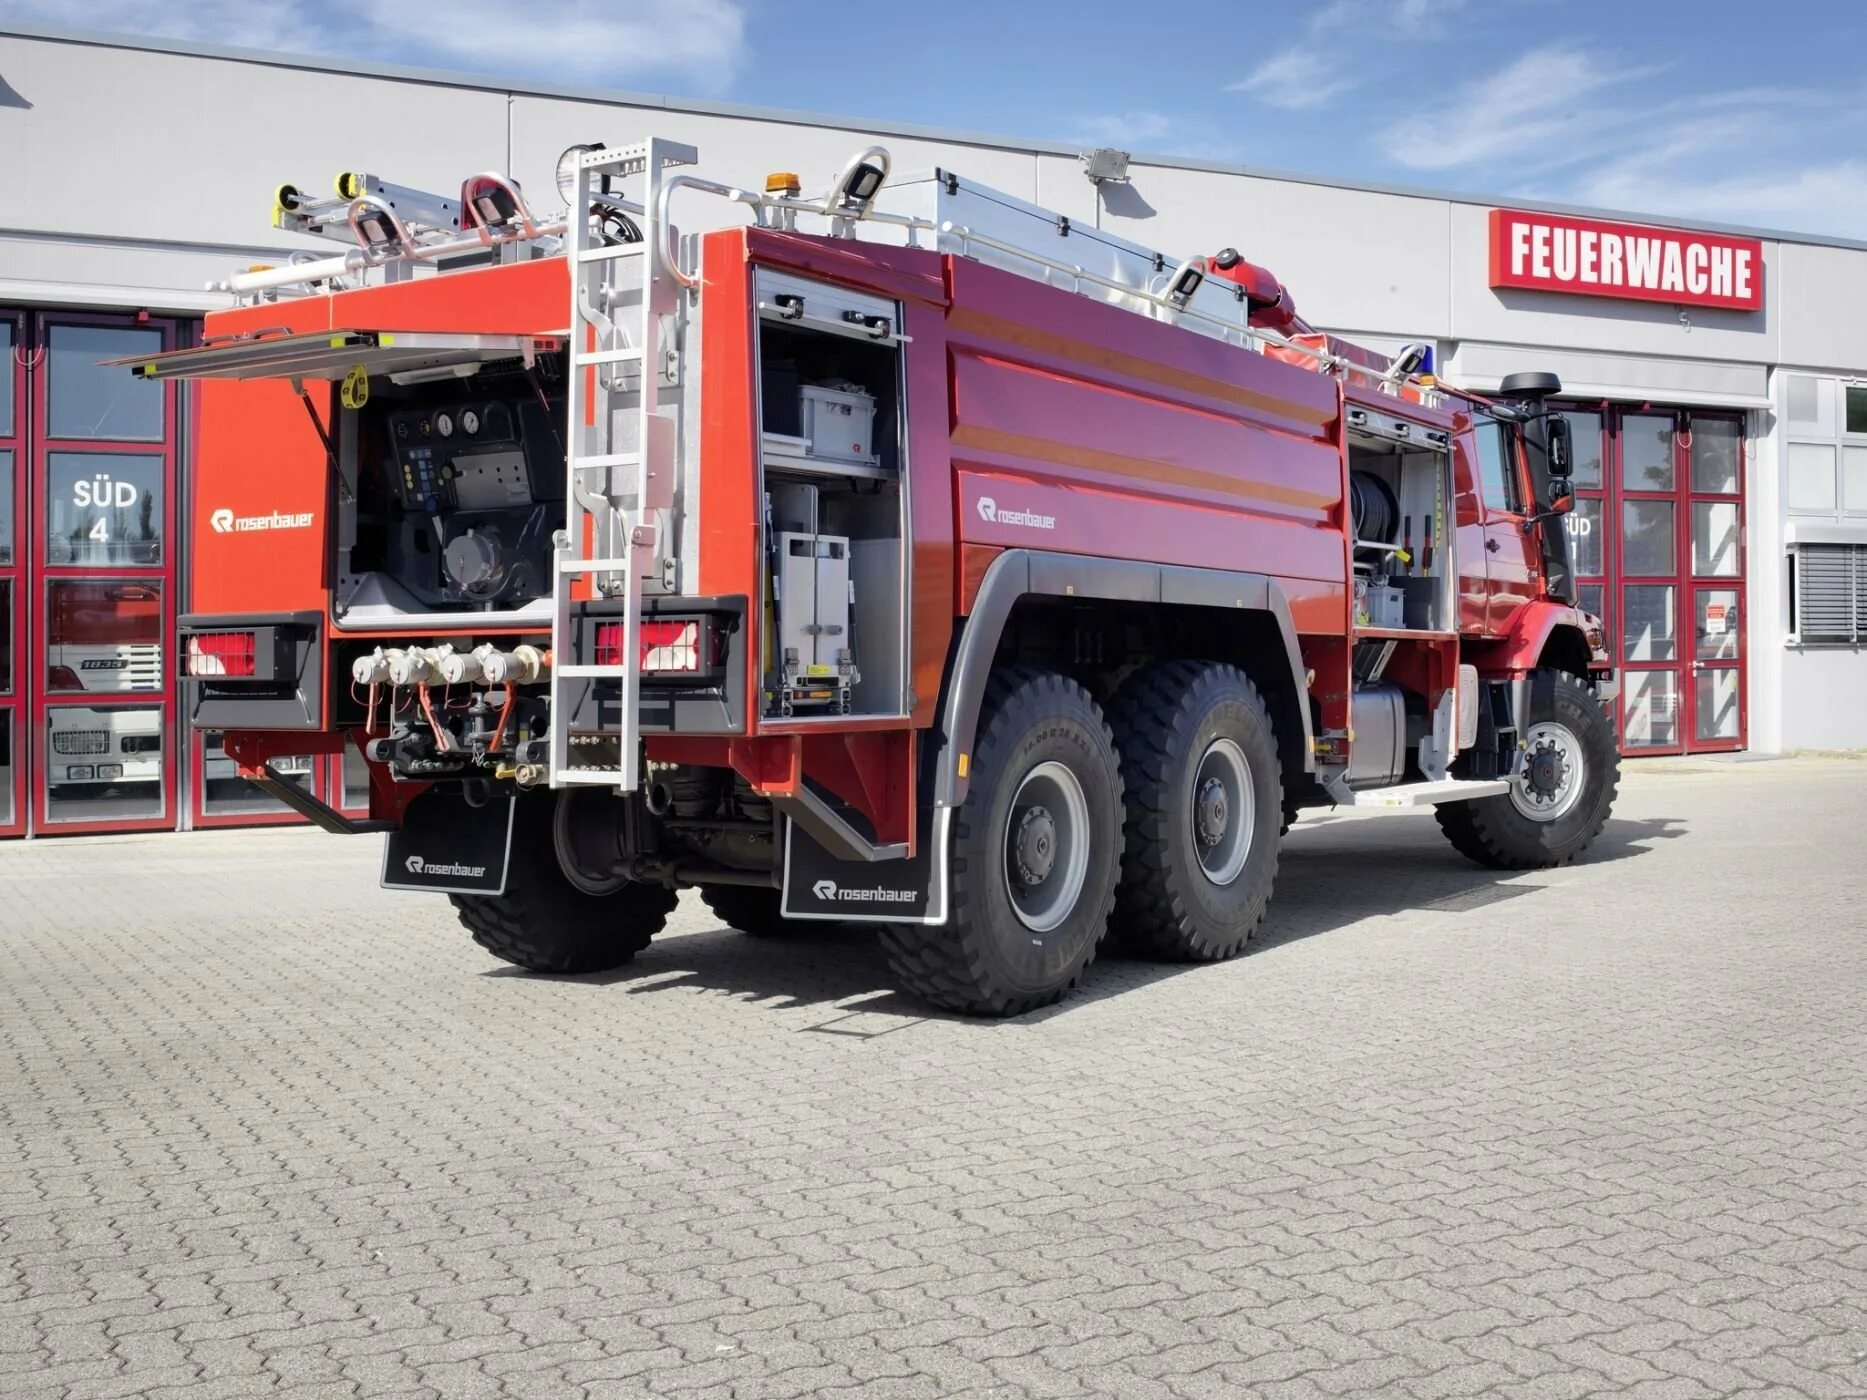 Хранение пожарных автомобилей. Mercedes-Benz Zetros 2733. Mercedes-Benz Zetros 2733 пожарный. Rosenbauer пожарная машина. Пожарная машина Rosenbauer Panther.